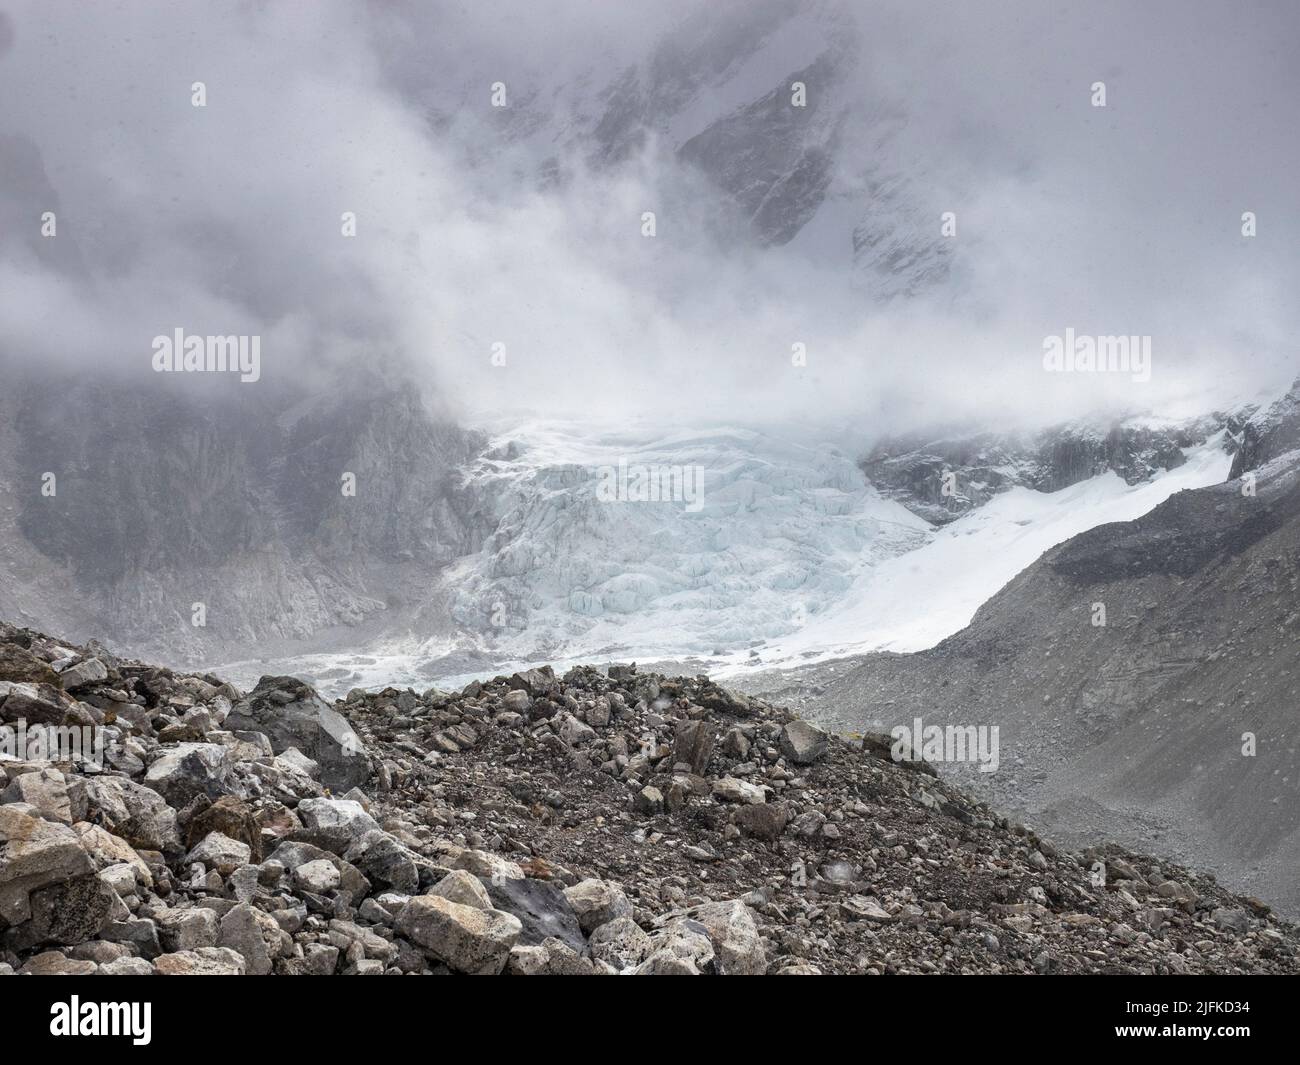 Le mois de mai, des nuages surpassent le glacier de Khumbu et une glace au large de Nuptse sur la route de randonnée le long de la moraine jusqu'au camp de base de l'Everest. Banque D'Images